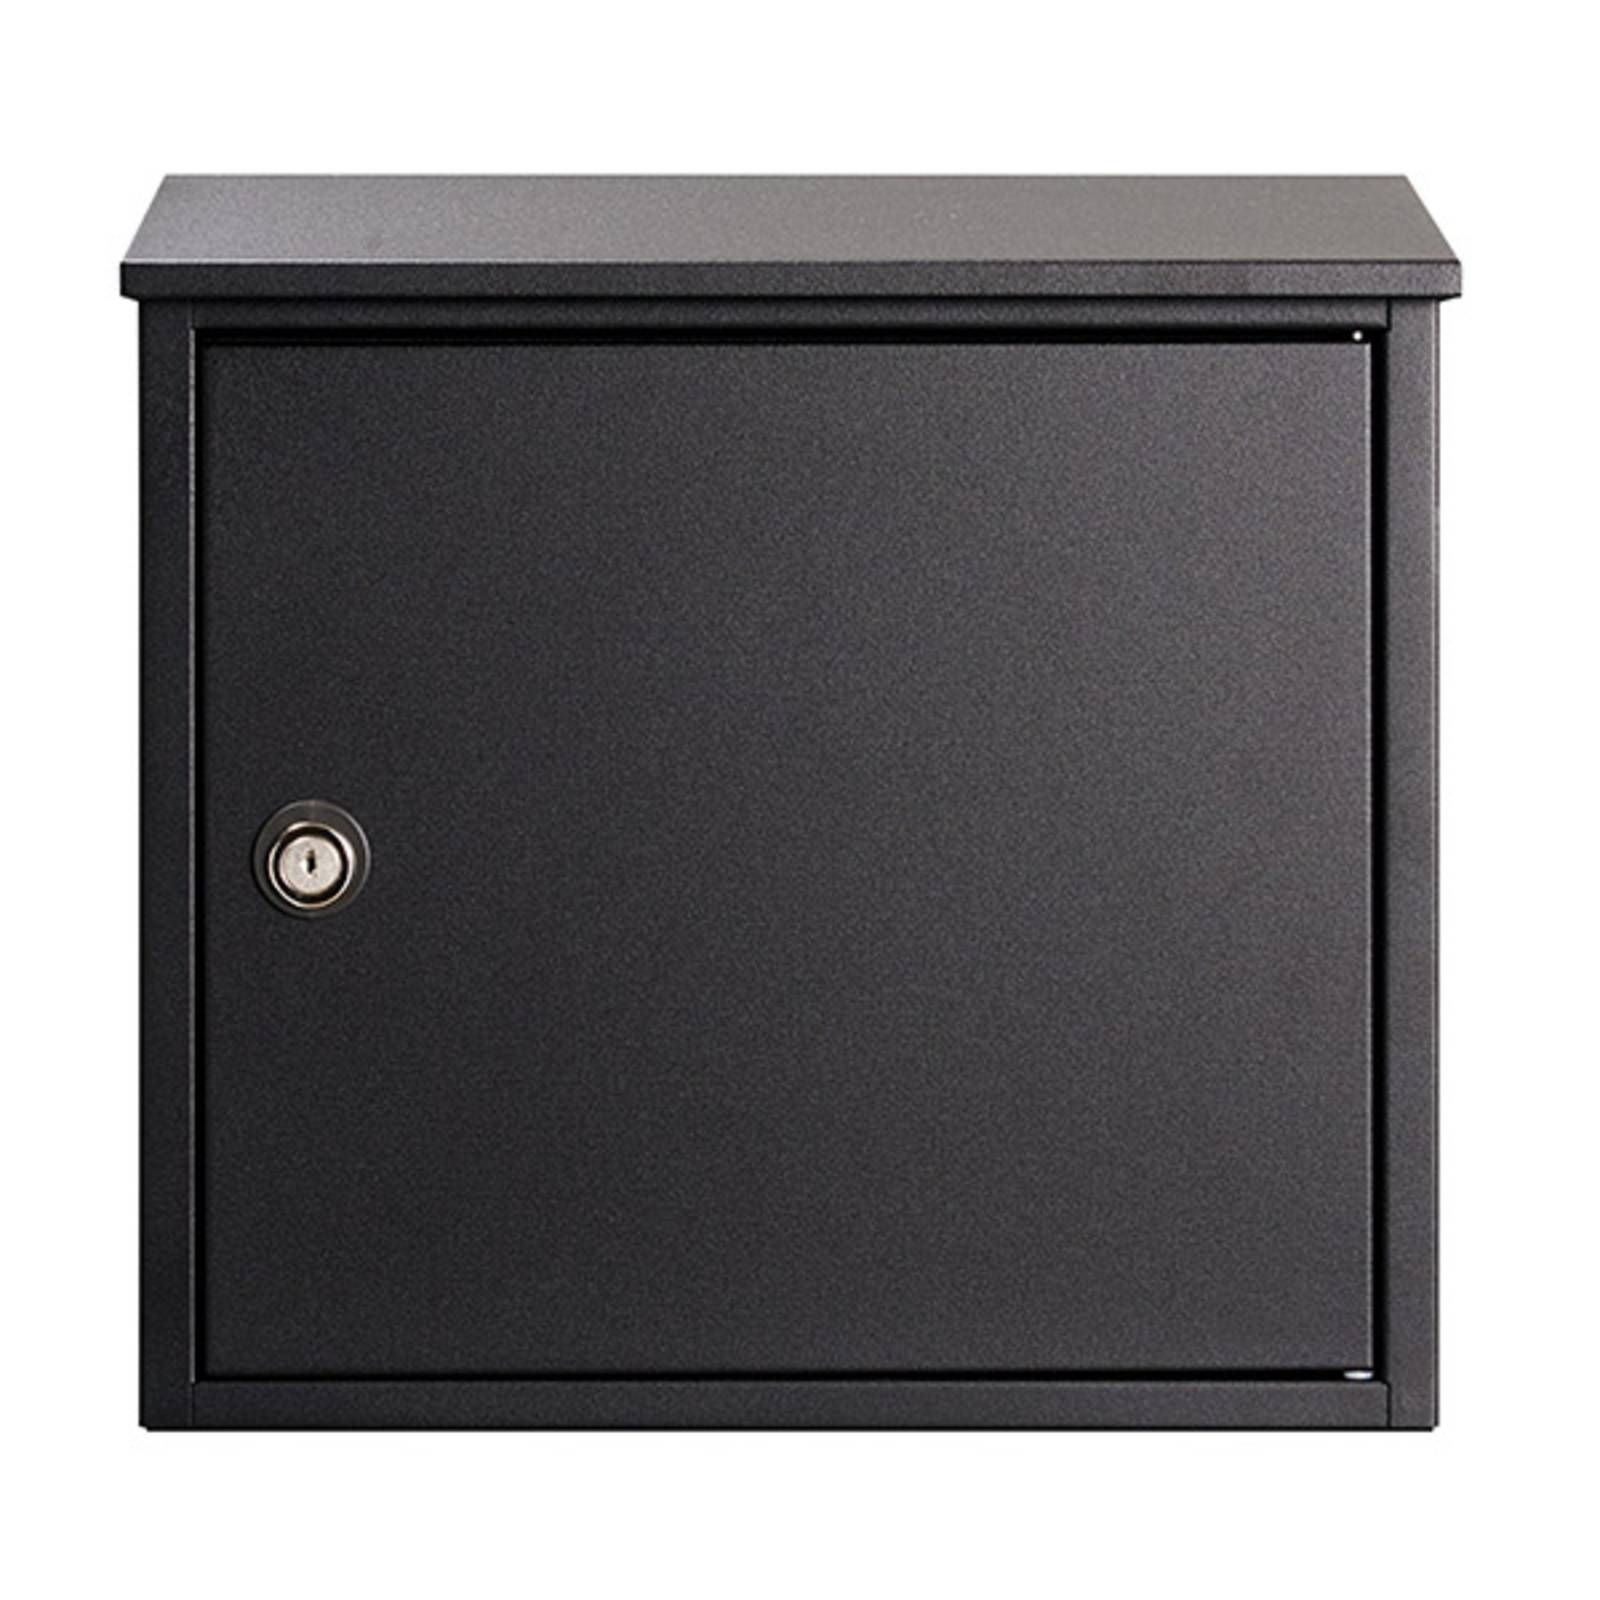 Juliana Nástenná poštová schránka Allux 400S čierna, galvanizovaná oceľ, práškový nástrek, L: 36 cm, K: 35.5cm